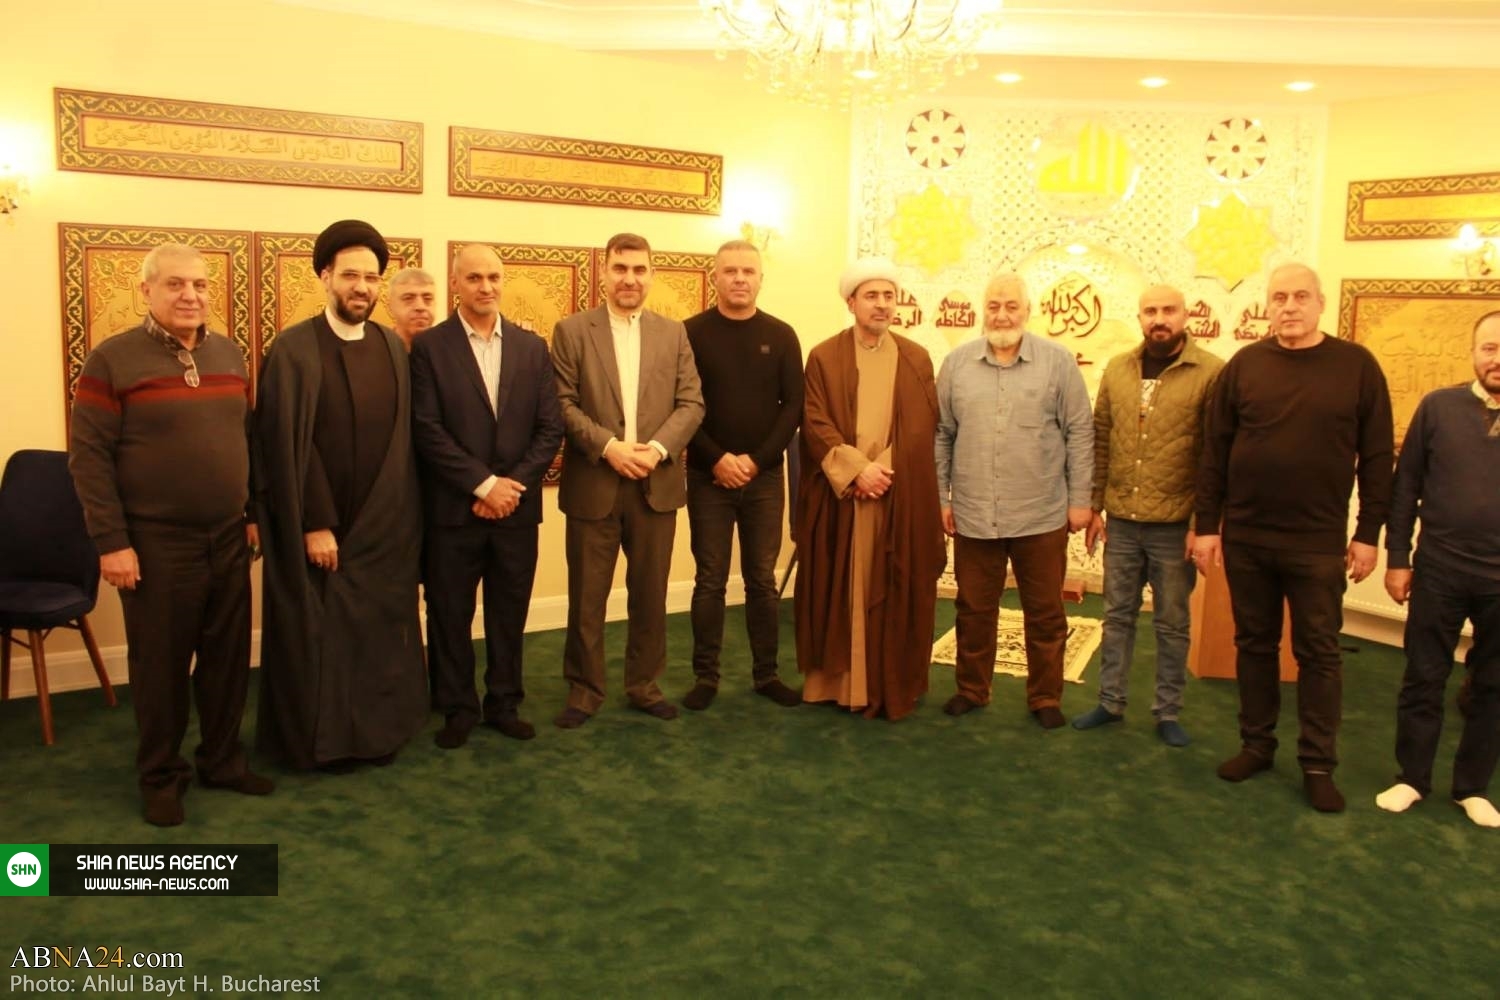 افتتاح ساختمان جدید مرکز اسلامی اهل بیت(ع) در پایتخت رومانی+ تصاویر